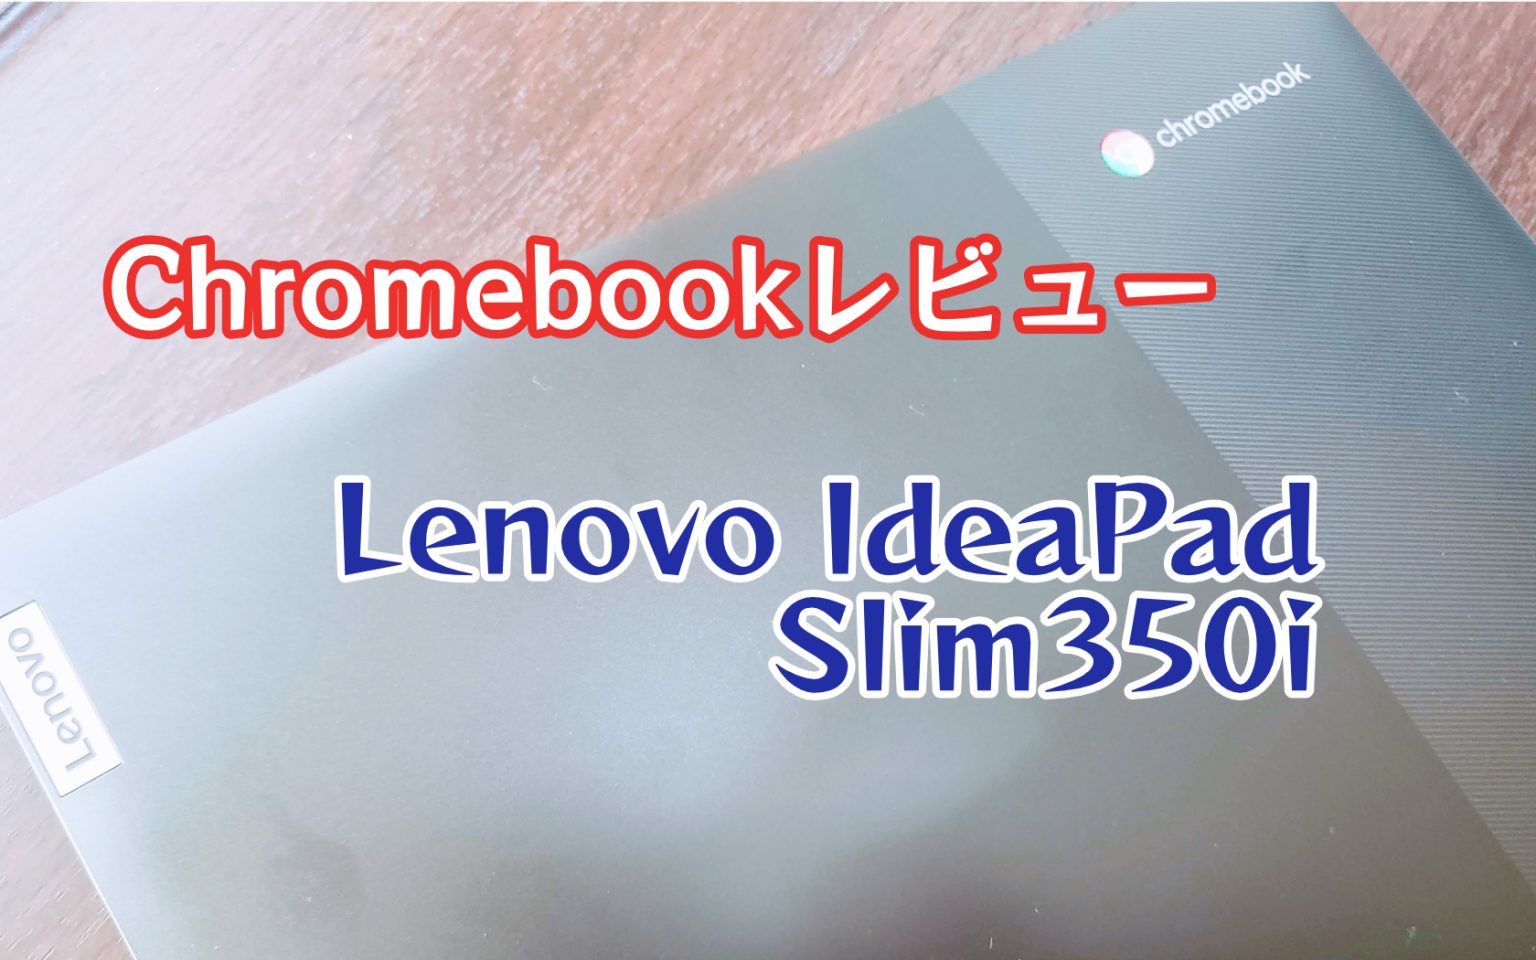 IdeaPad Slim350i Chromebook Lenovo レビュー 値段なりのノートPC – しあわせなITせいかつ